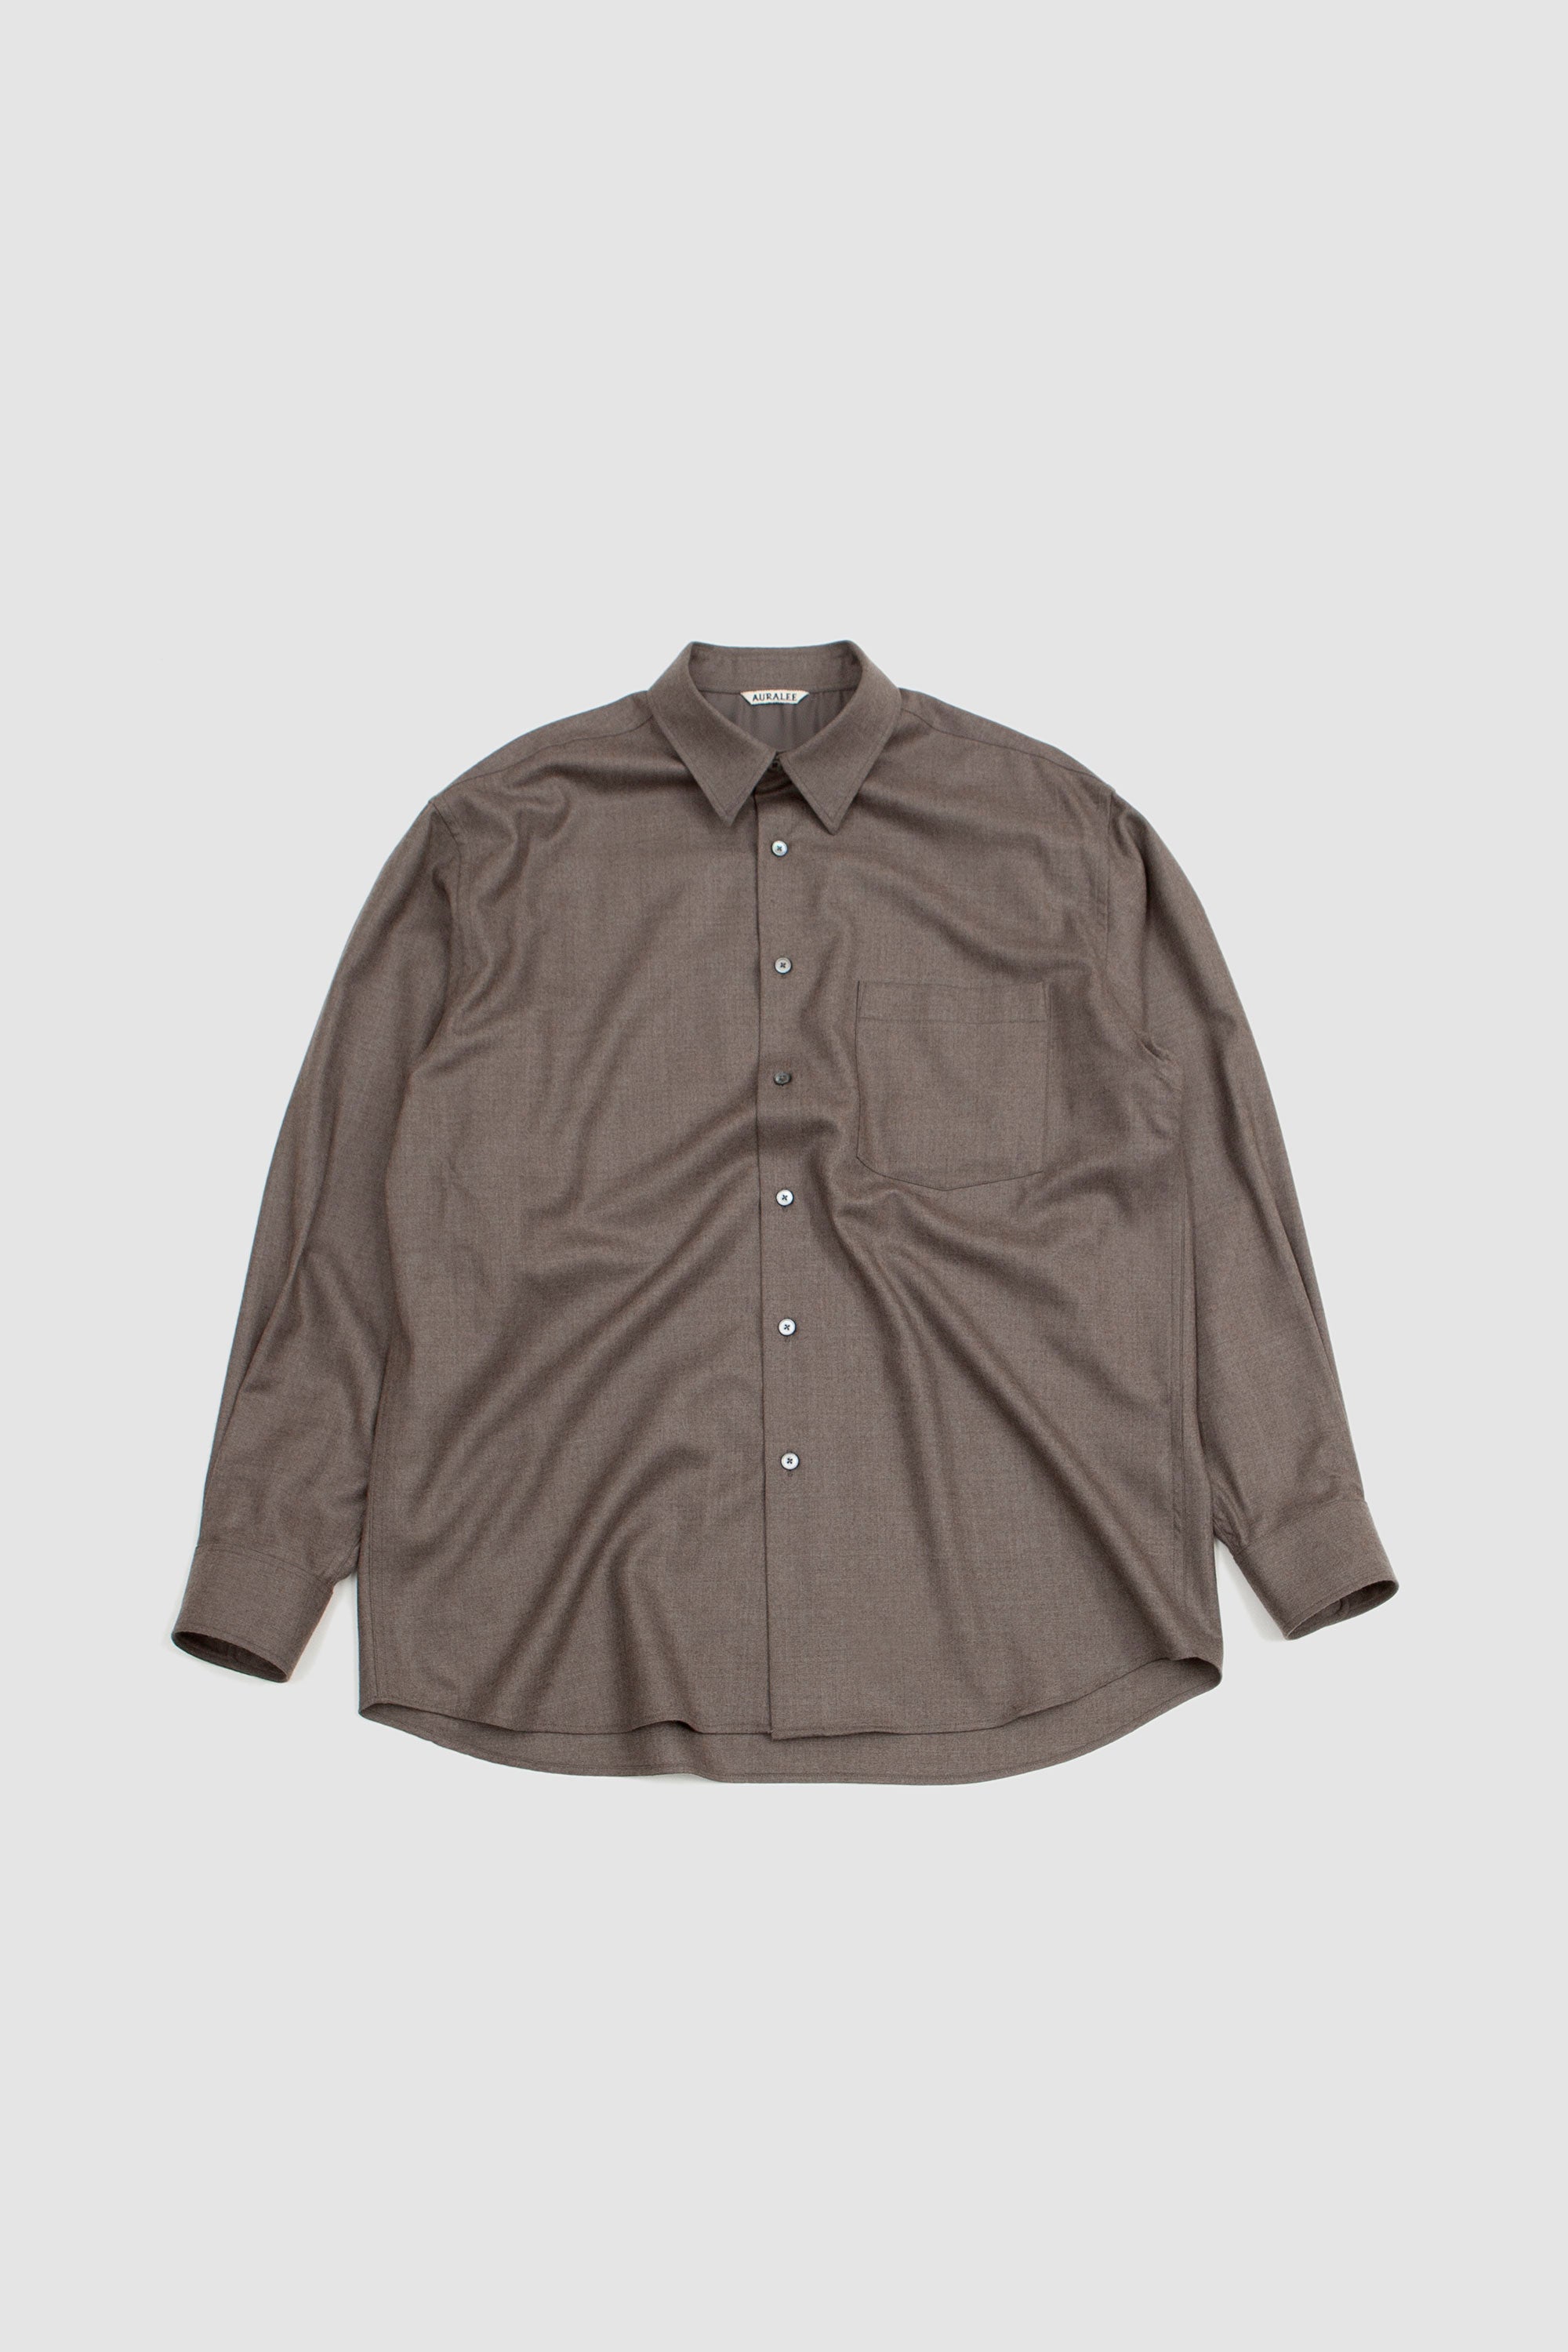 SPORTIVO [Super light wool shirt top brown]